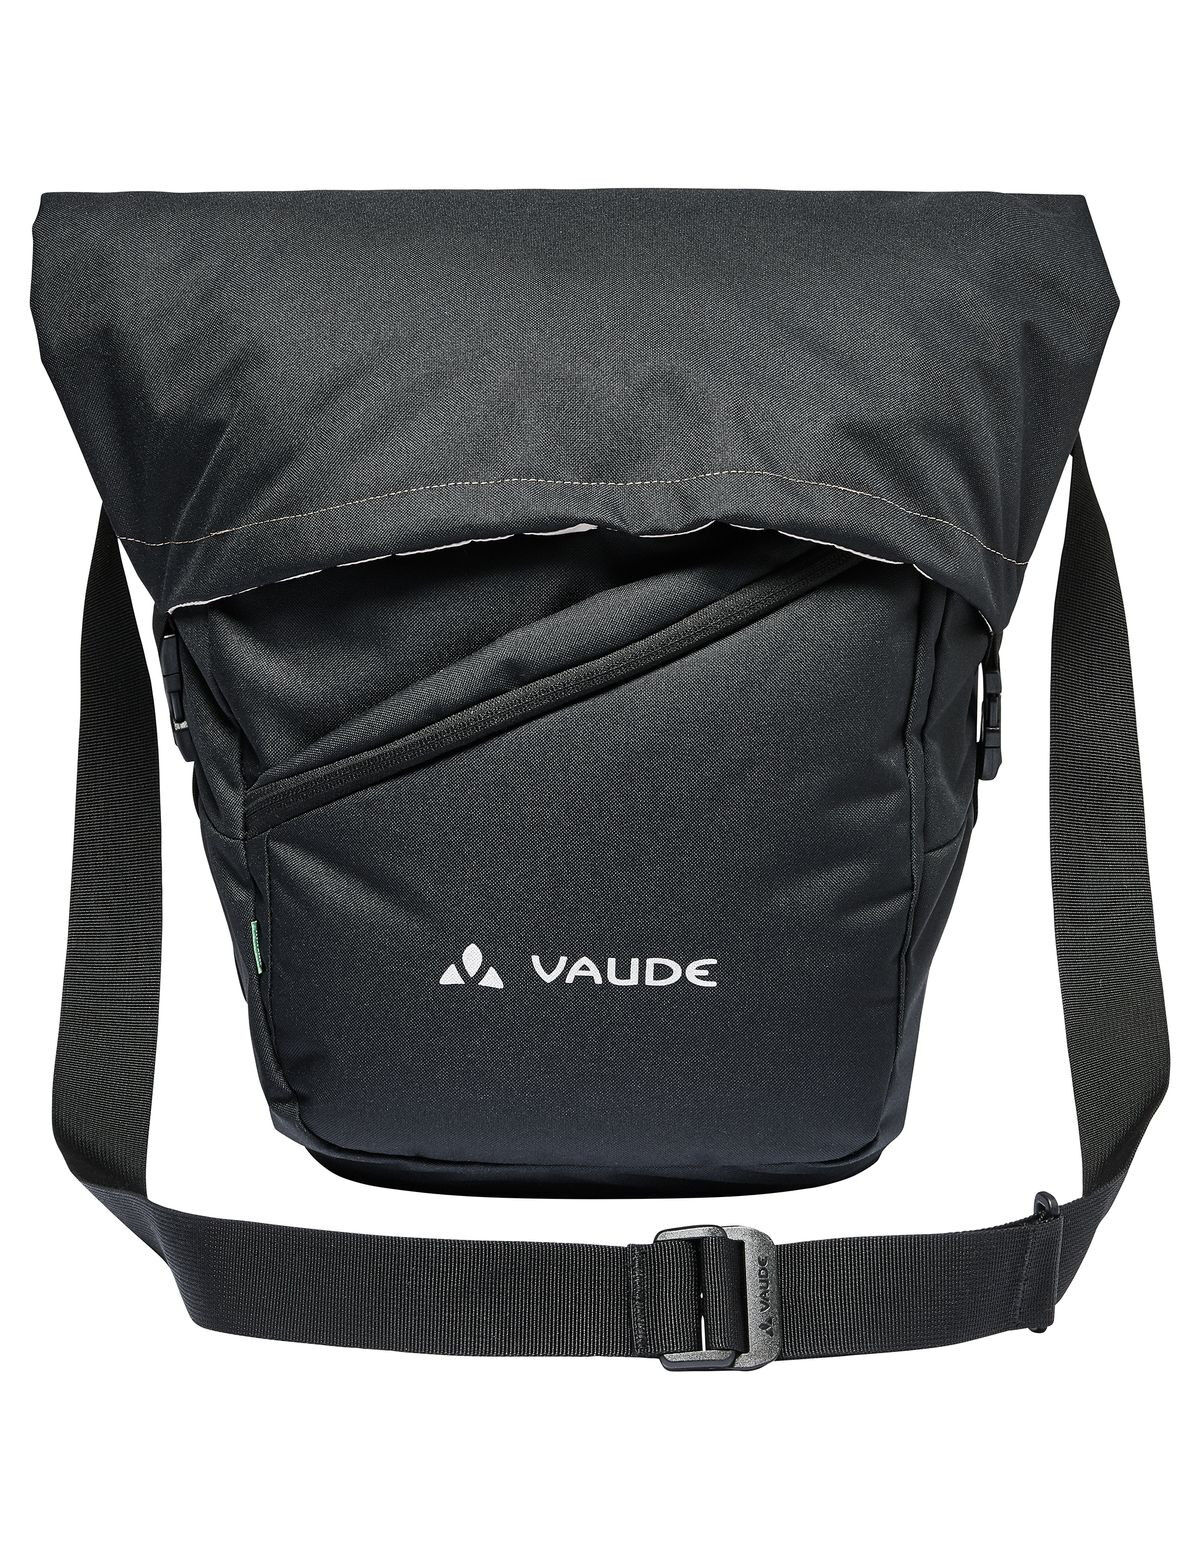 Vaude - SortYour Business - Shoulder bag